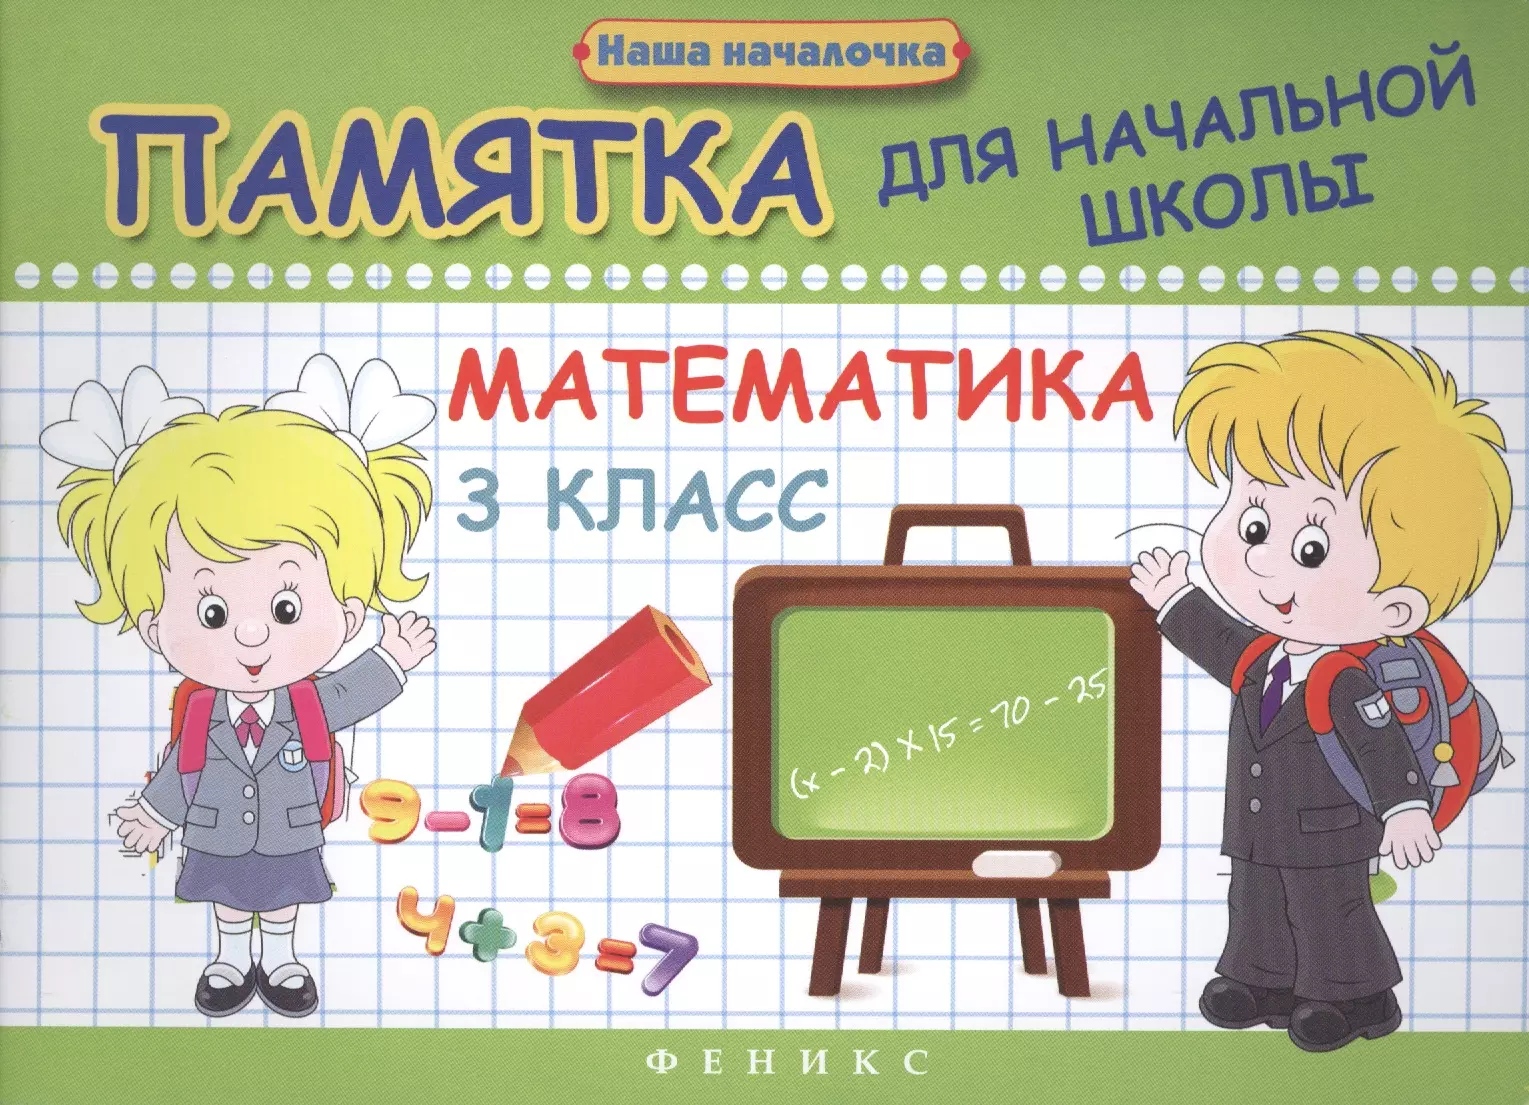 Матекина Эмма Иосифовна - Математика. 3 класс: памятка для начальной школы